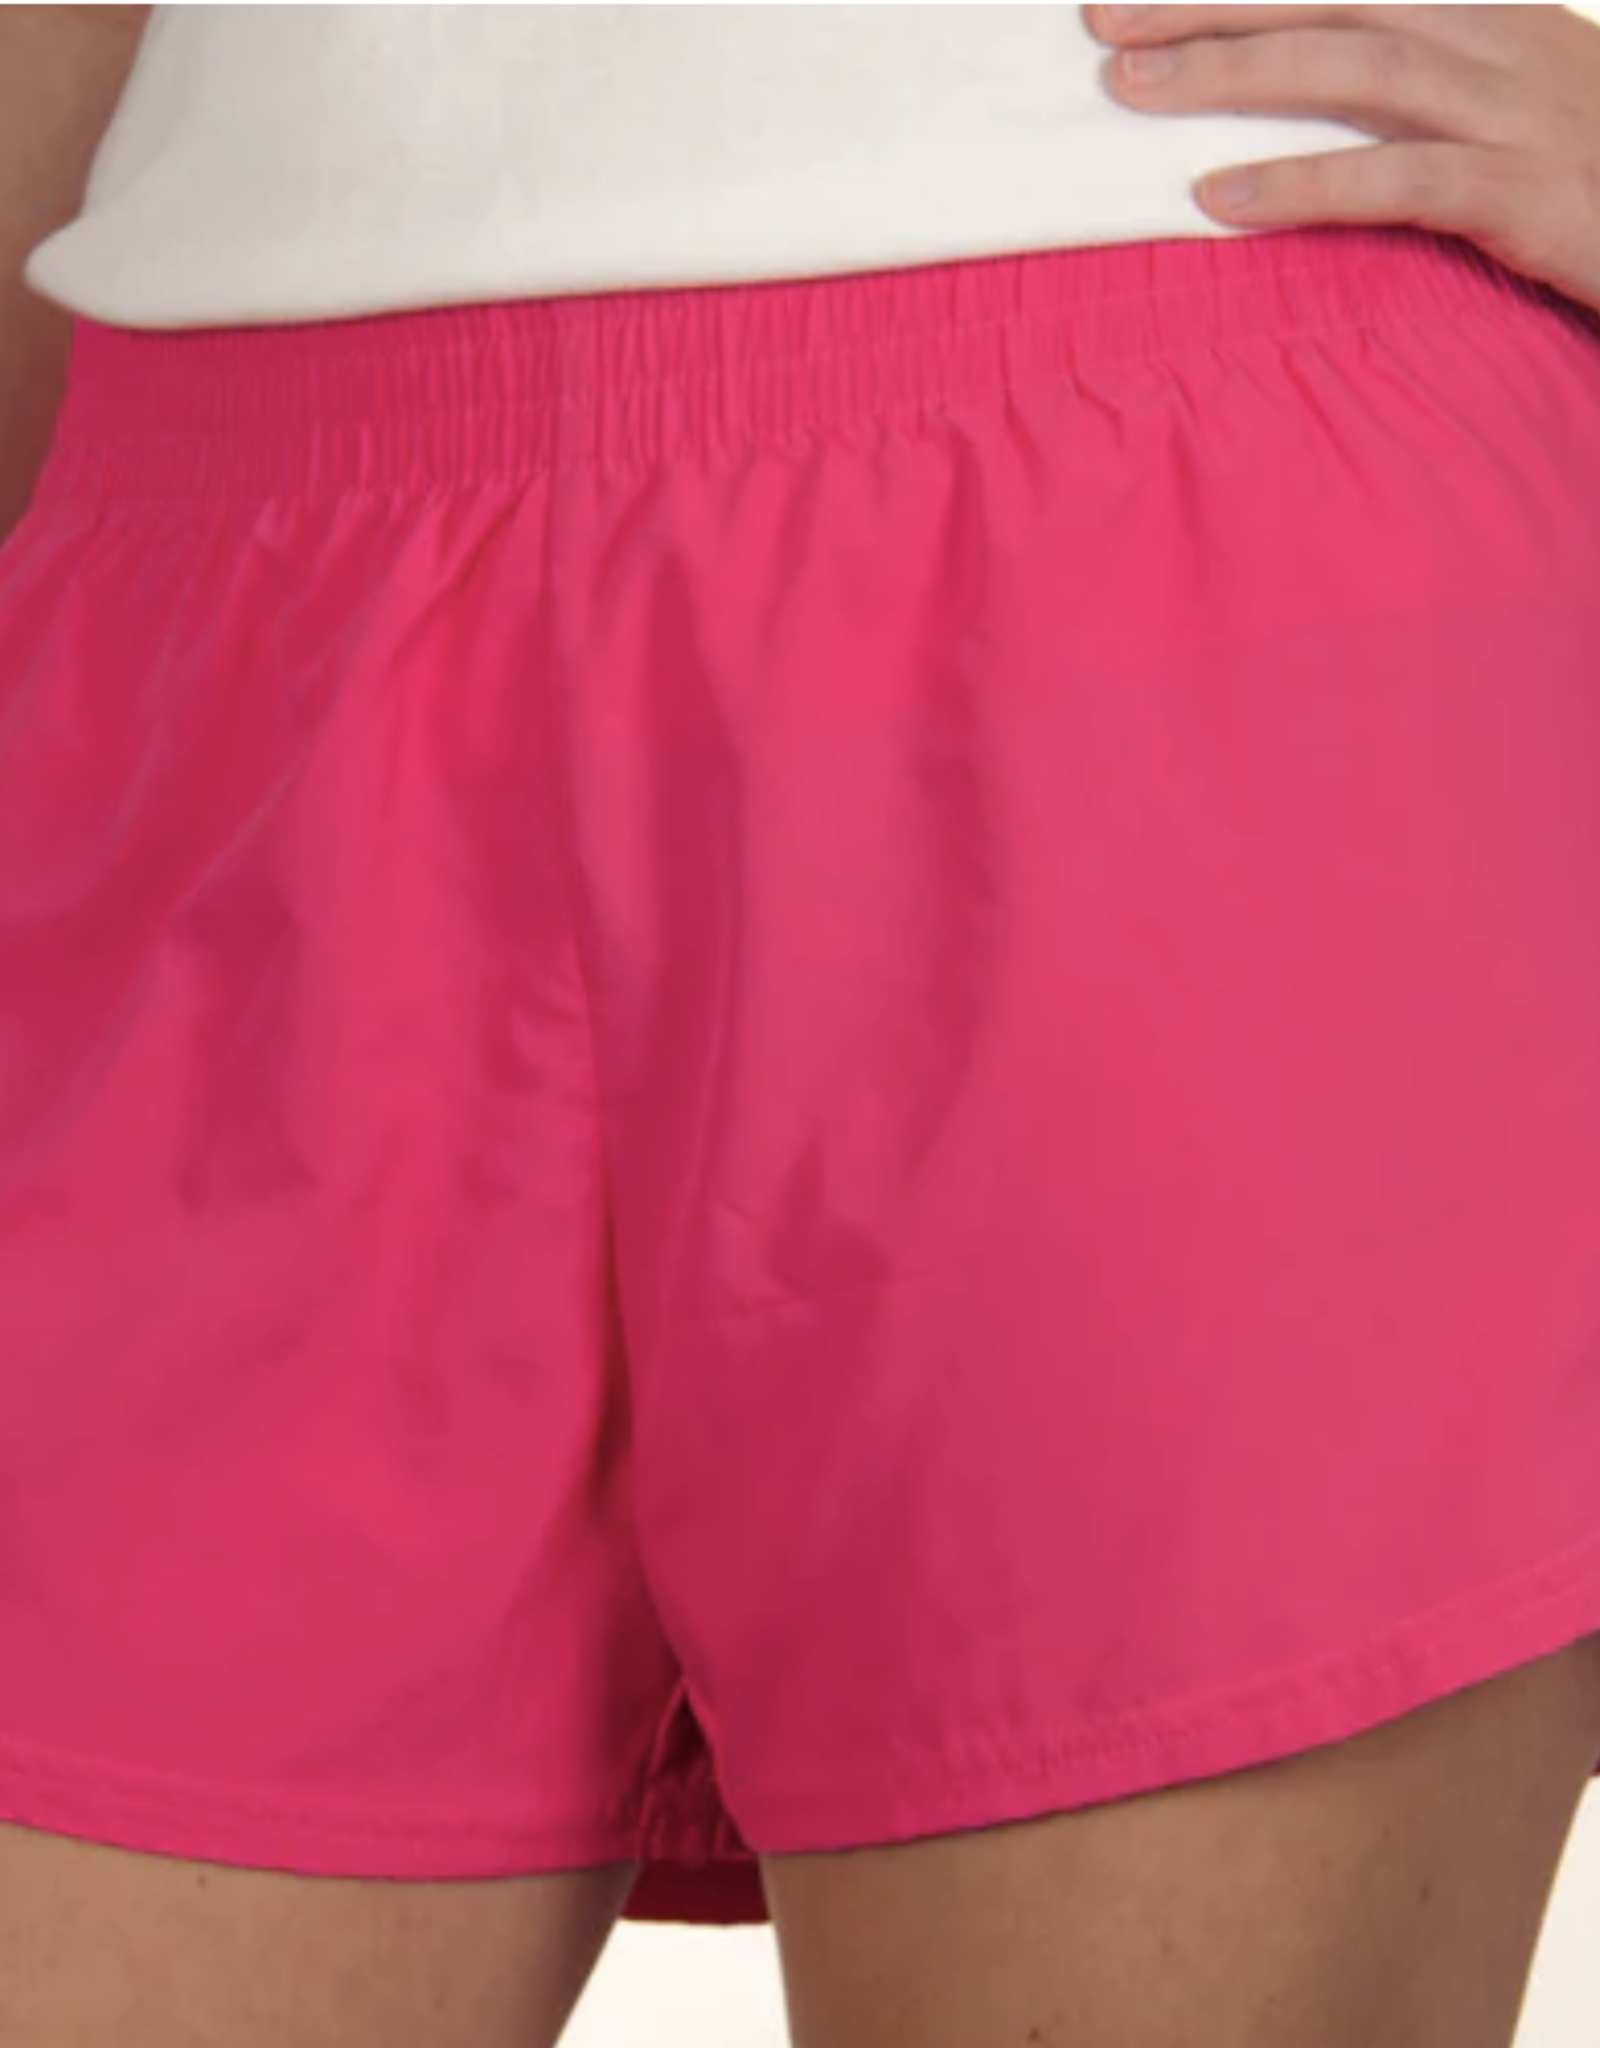 azarhia steph shorts solid